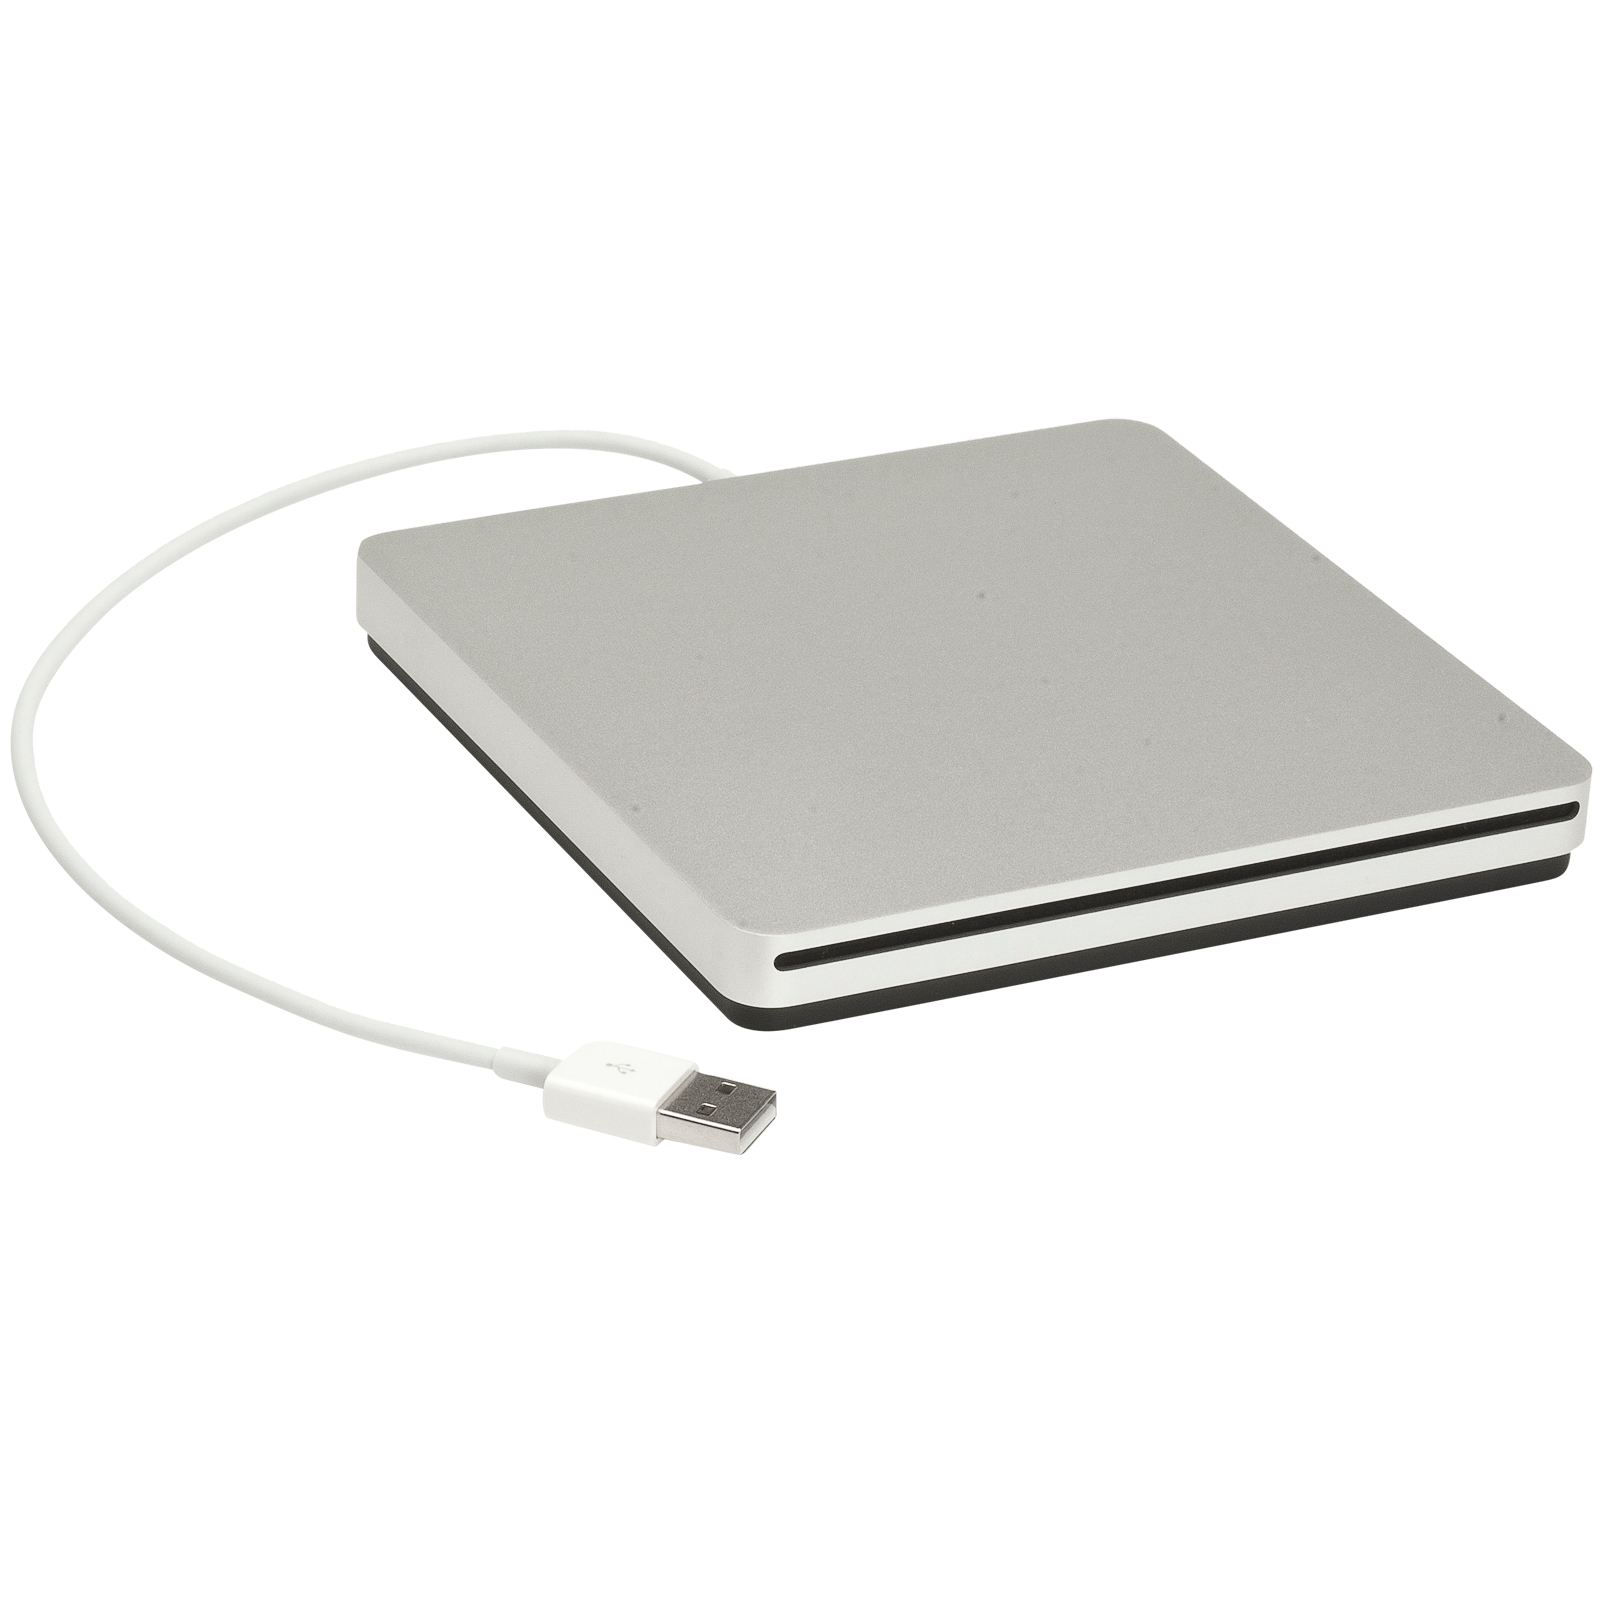 Apple SuperDrive External DVD Drive